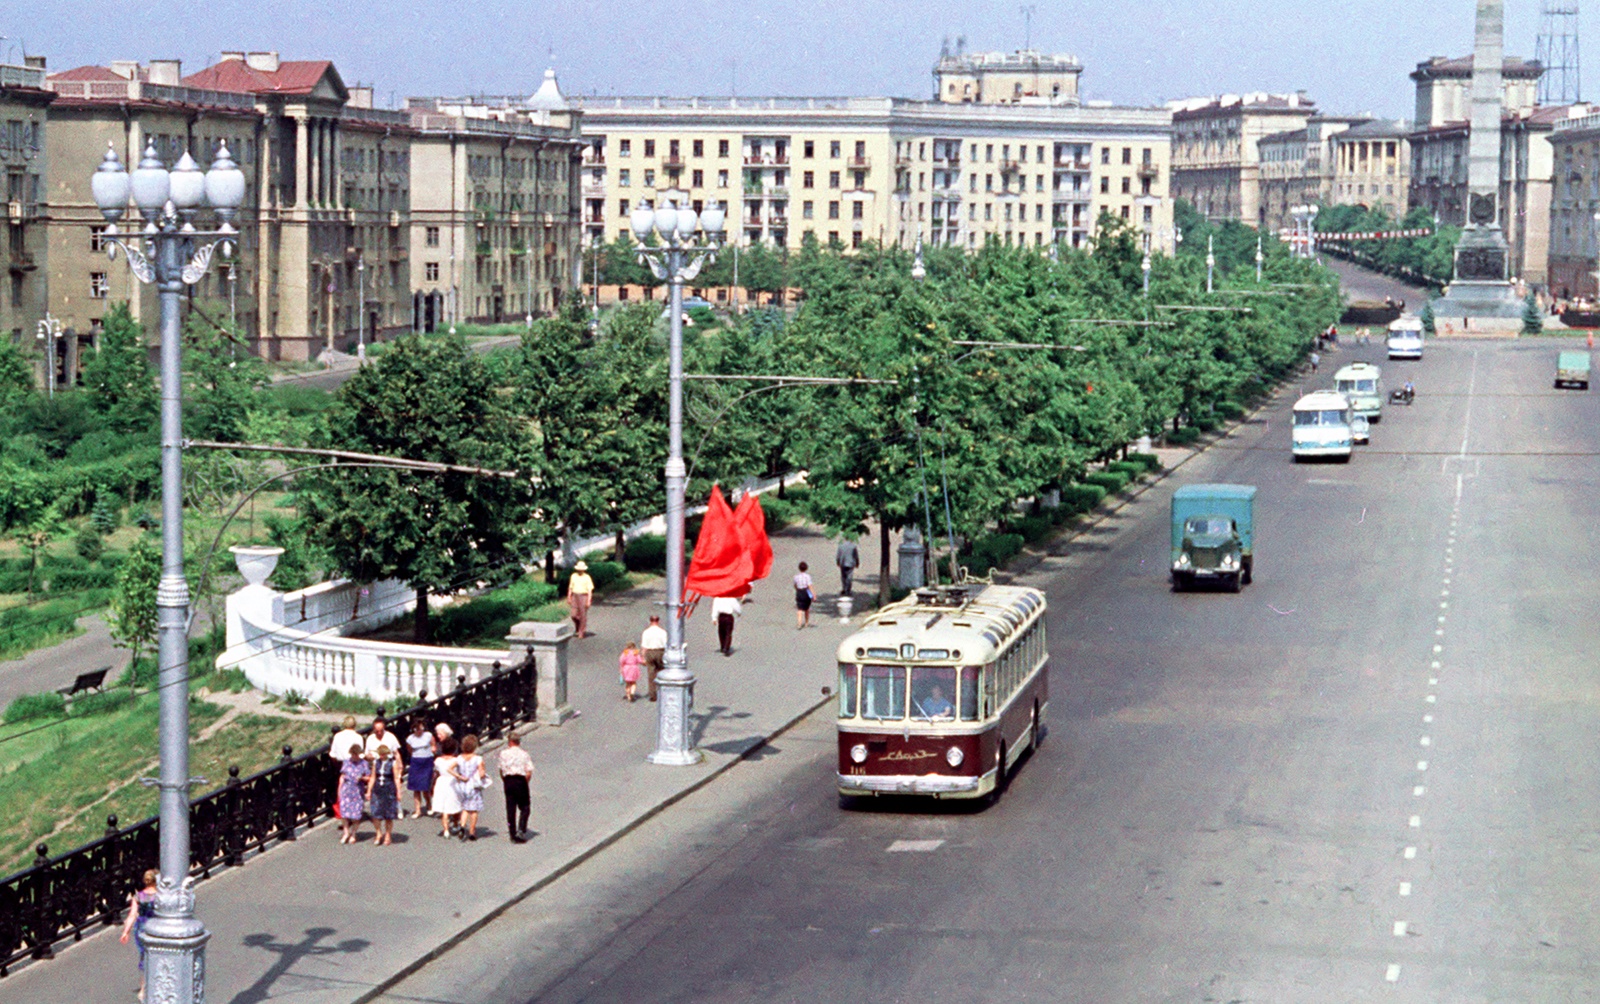 Первый троллейбус и заказ тортов по телефону: как Беларусь прожила 1952-й – год Дракона